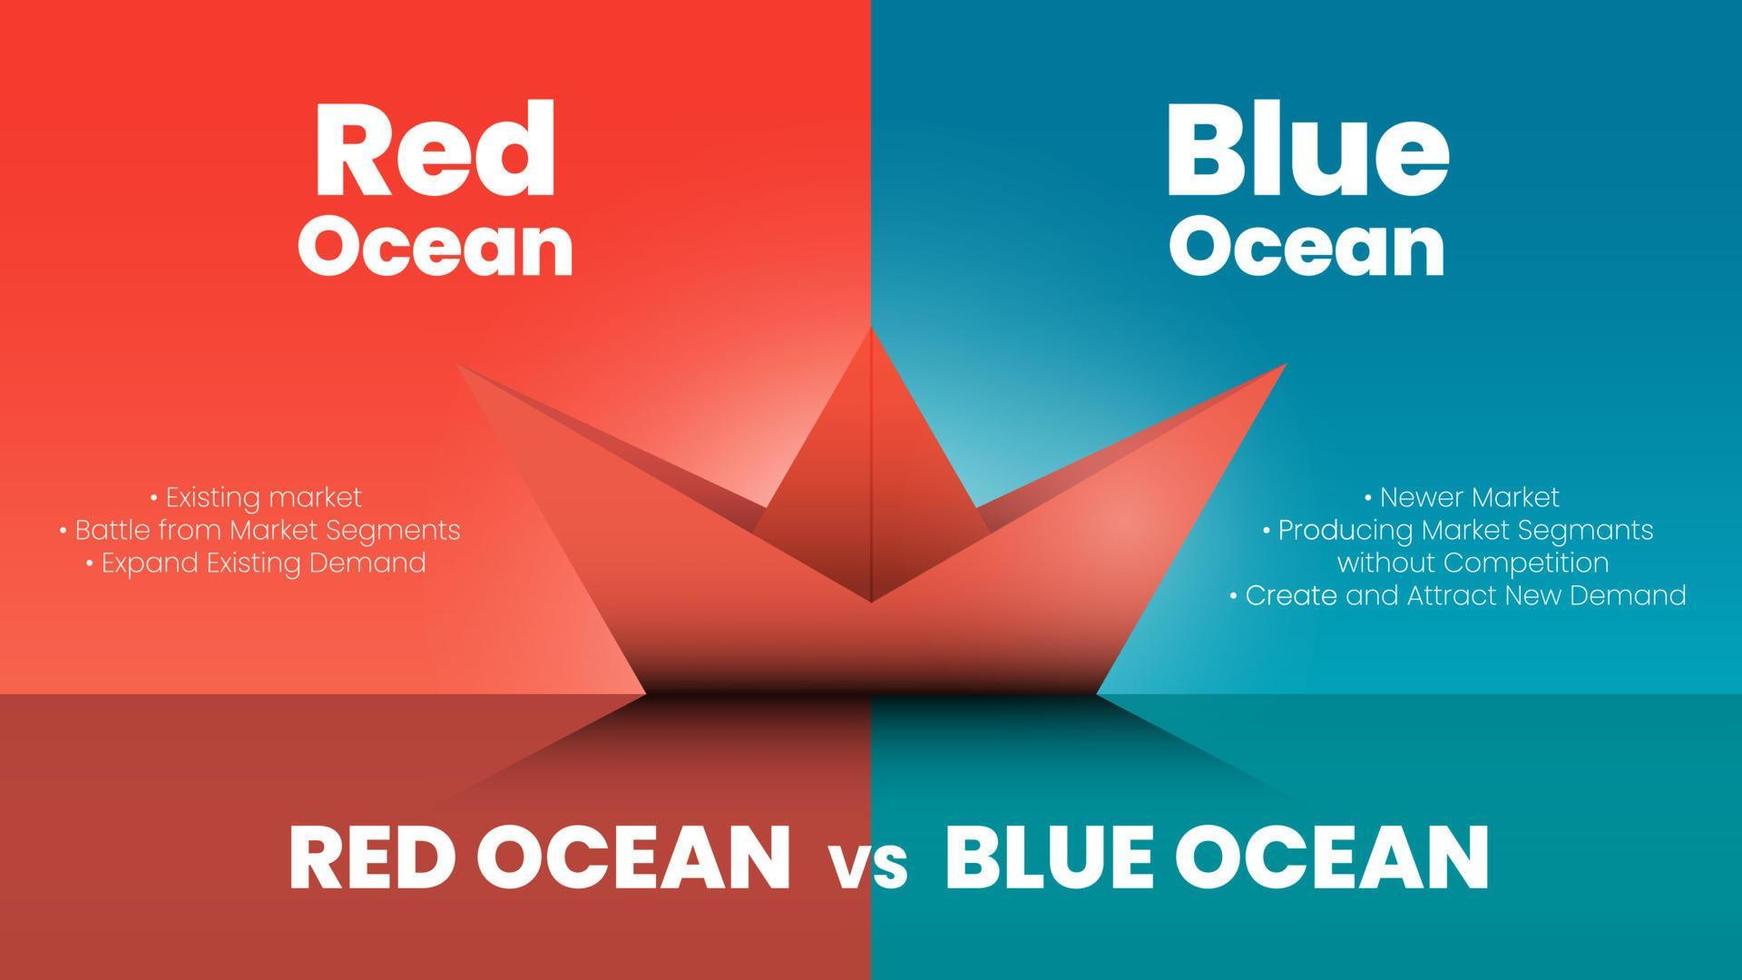 marknadsföringen röda havet och blå havet vektor presentation jämför två marknader som kallas blå havet strategi koncept för att analysera affärsplan. en illustration vektor design med båt origami pappersfartyg